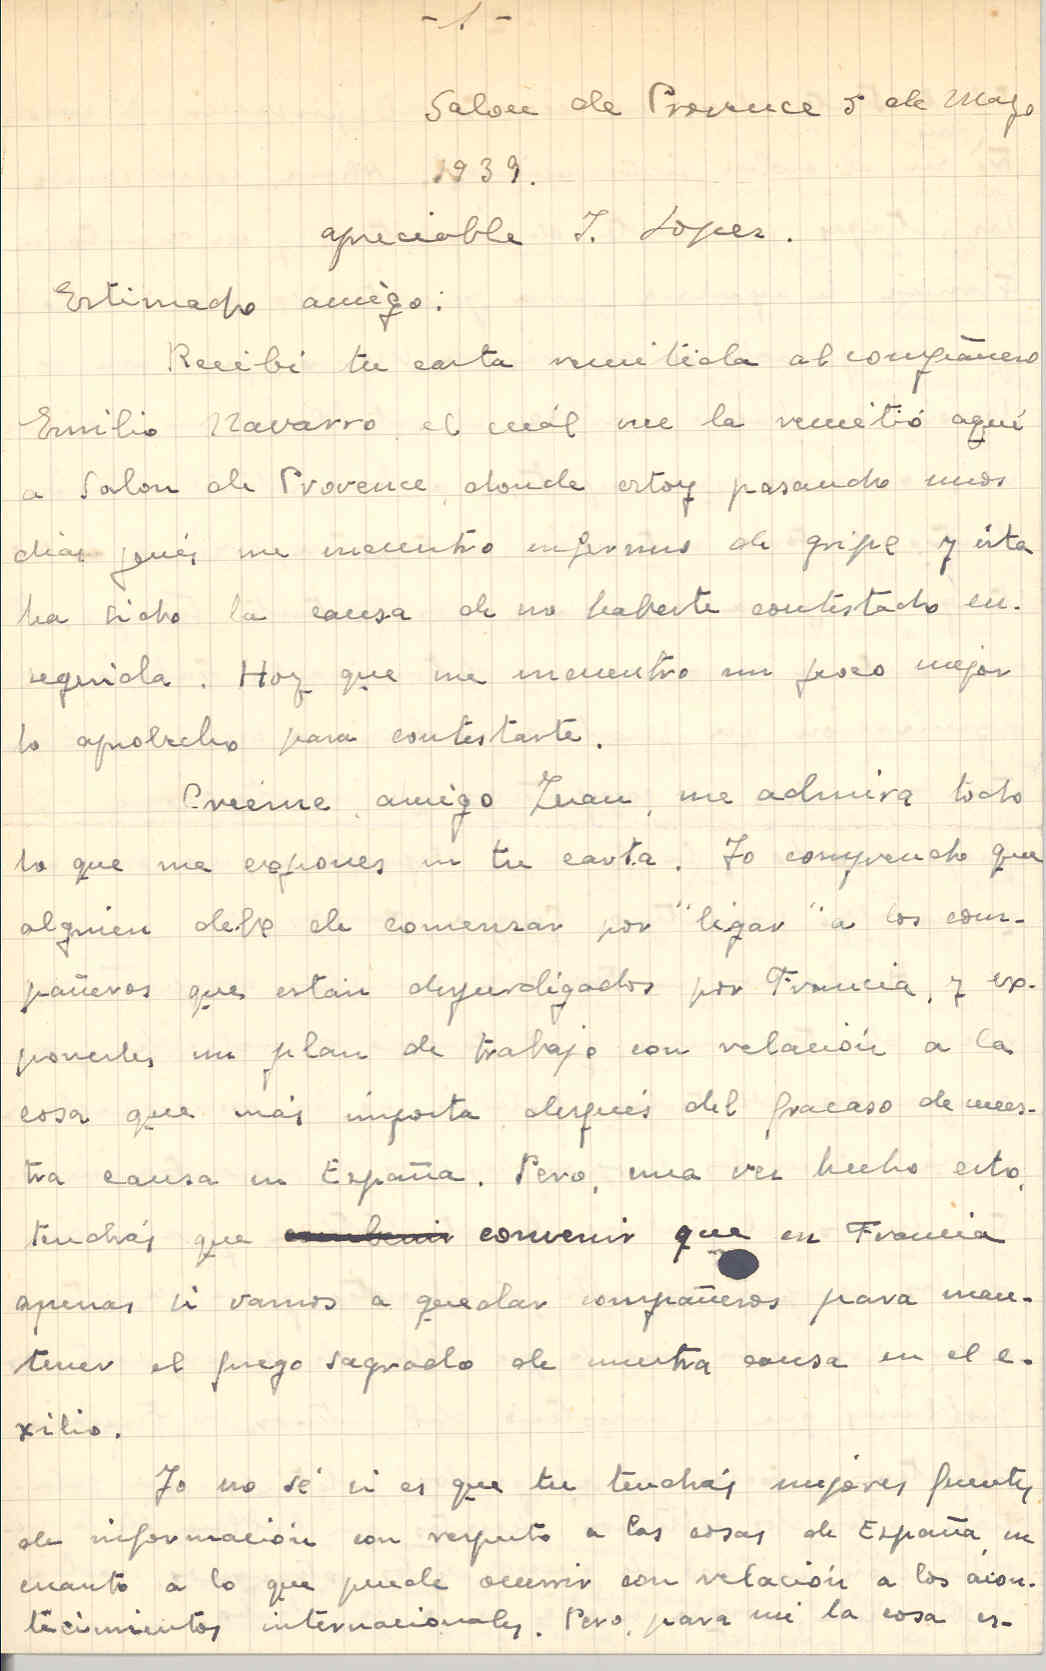 Carta de Torres en la que se muestra excéptico con la intención de López de reunir a los compañeros en Francia y elaborar un plan para reinstaurar la República, sin resolver antes problemas de subsistencia y de residencia en el país